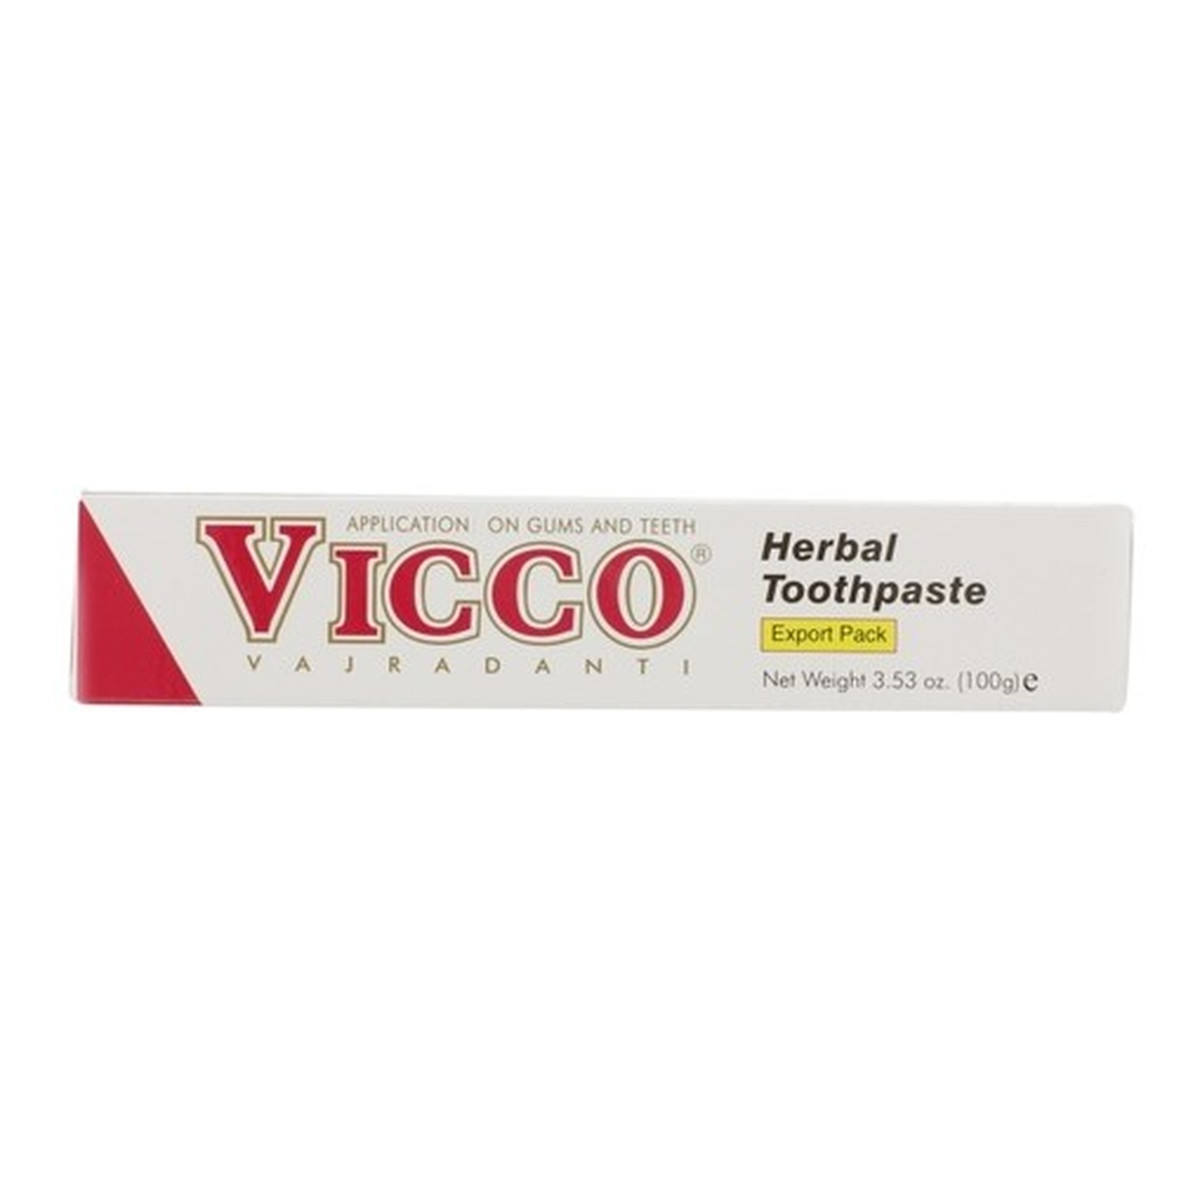 Vicco Vajradanti Pasta do zębów 100g